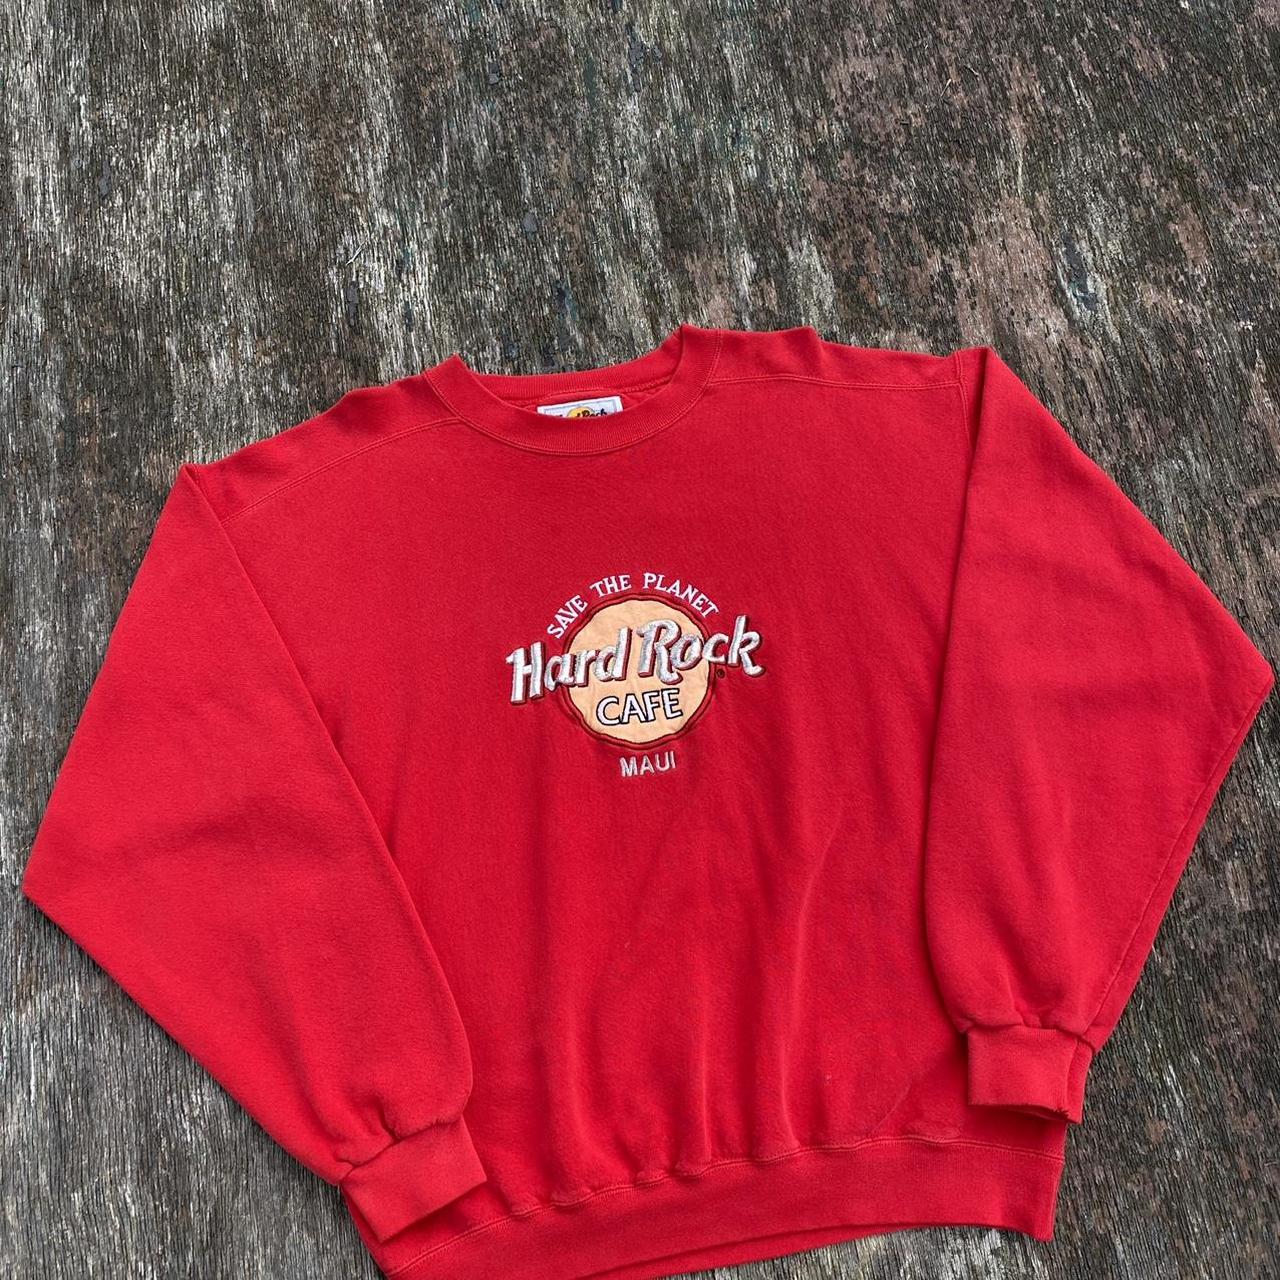 Vintage Hard Rock Cafe sweatshirt 🔥 A stunning 90s... - Depop